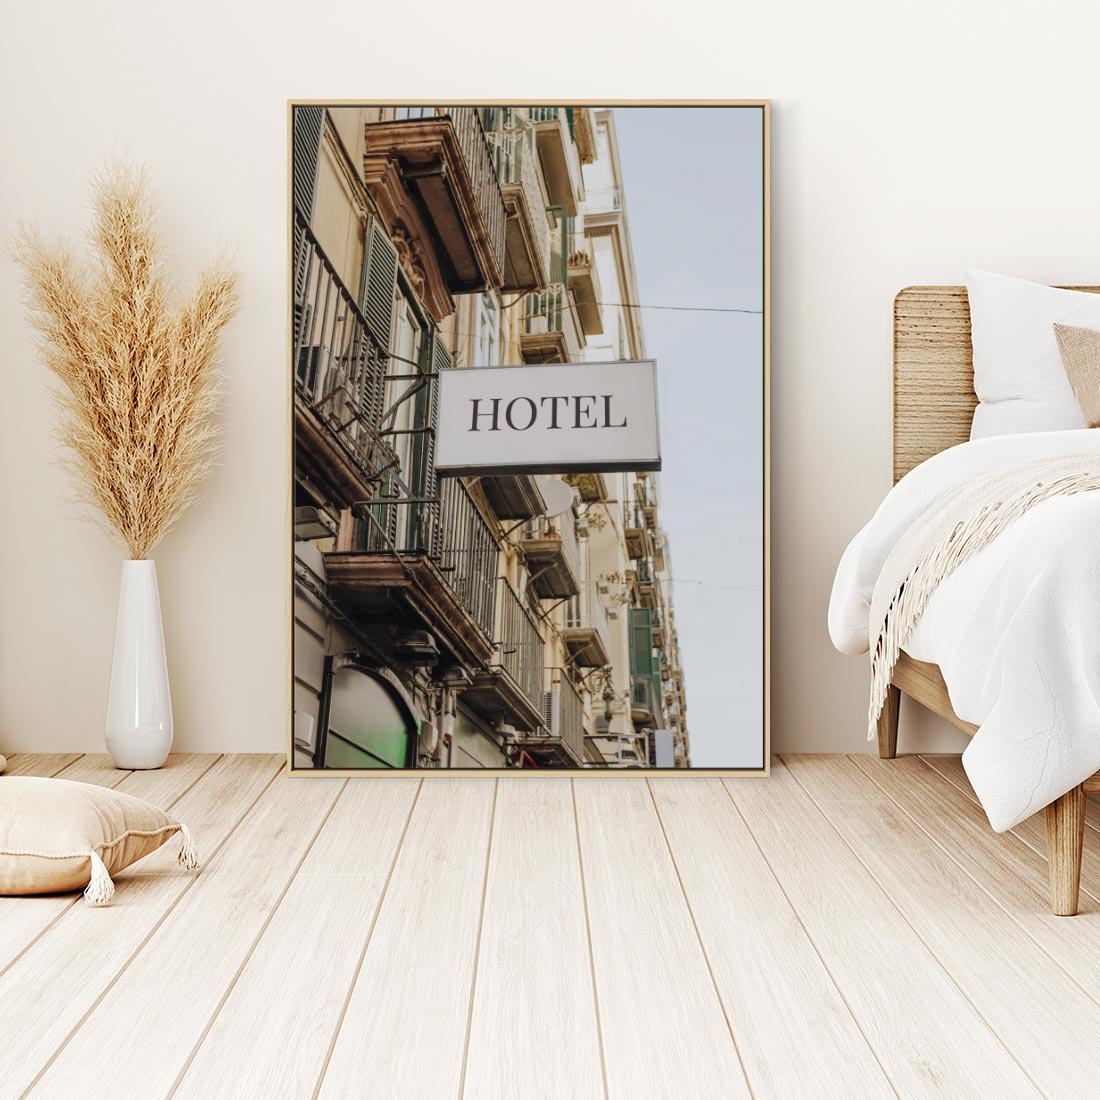 Obraz w ramie 50x70 - Magiczne Spacery - hotel, uliczka - rama drewno